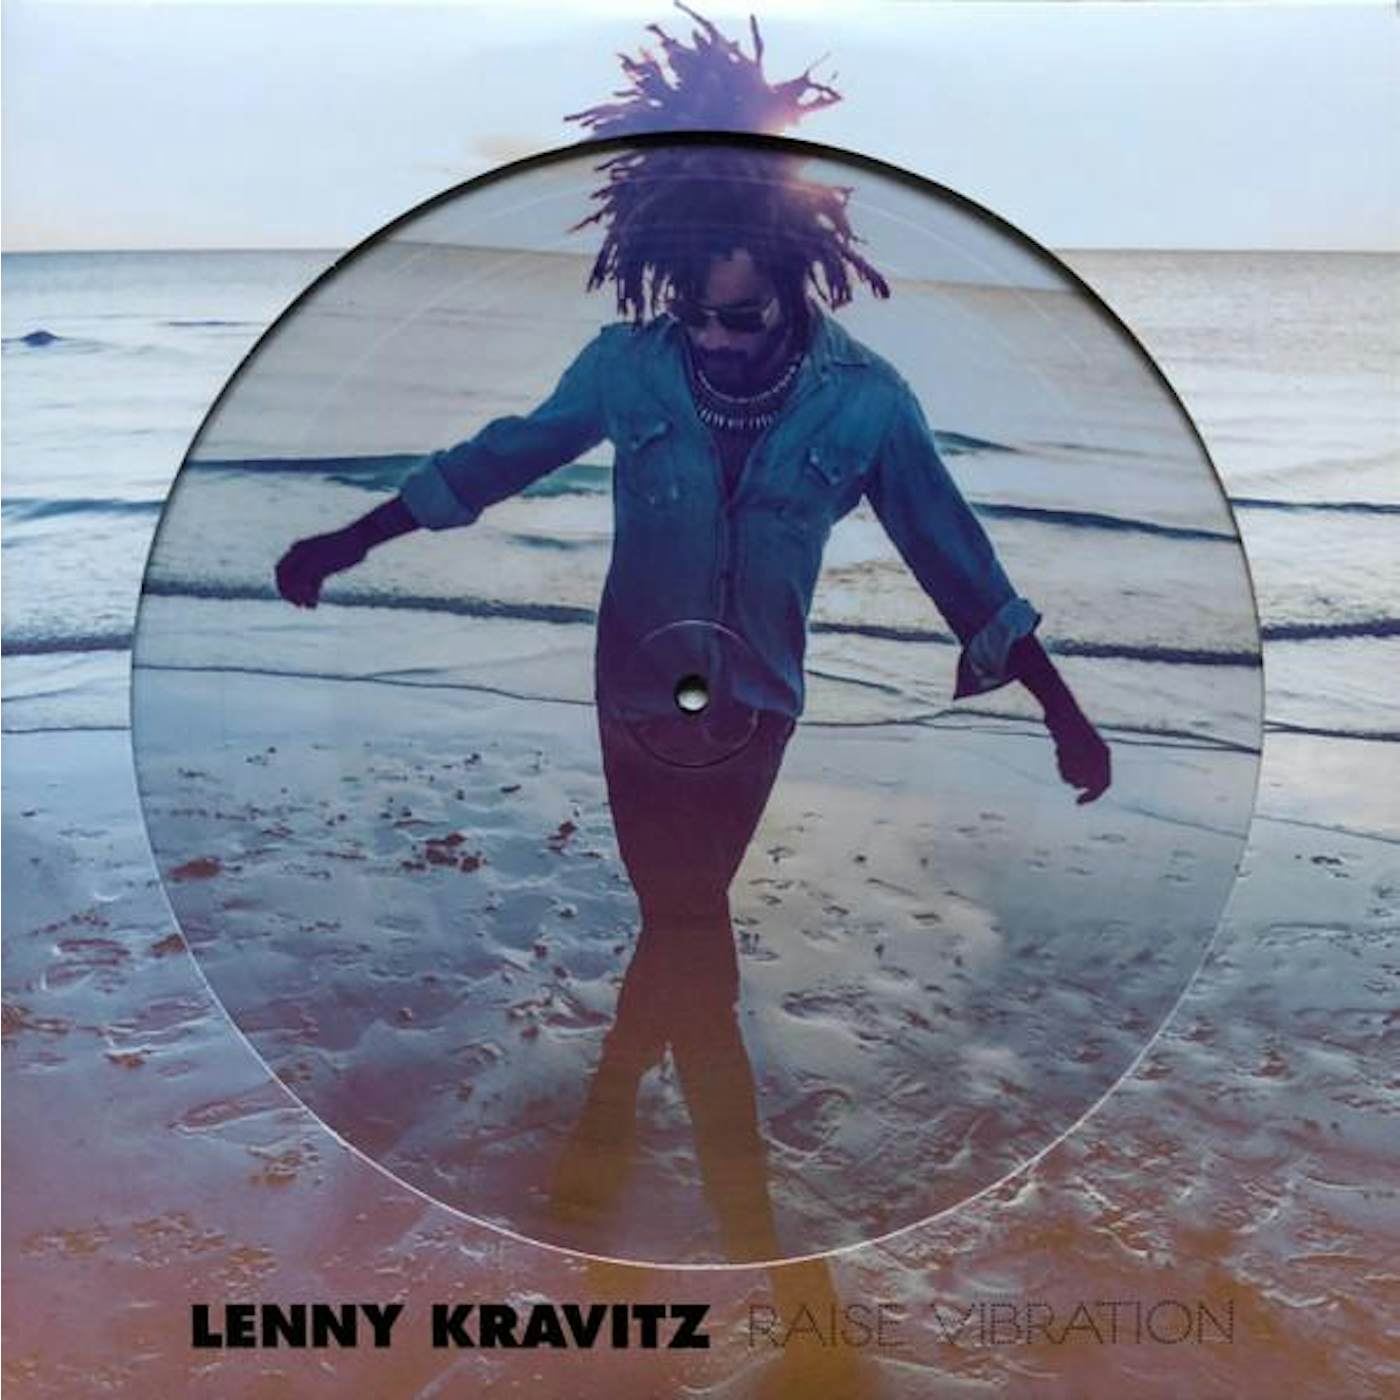 Lenny Kravitz Raise Vibration (2LP/Limited/Picture Disc) Vinyl Record